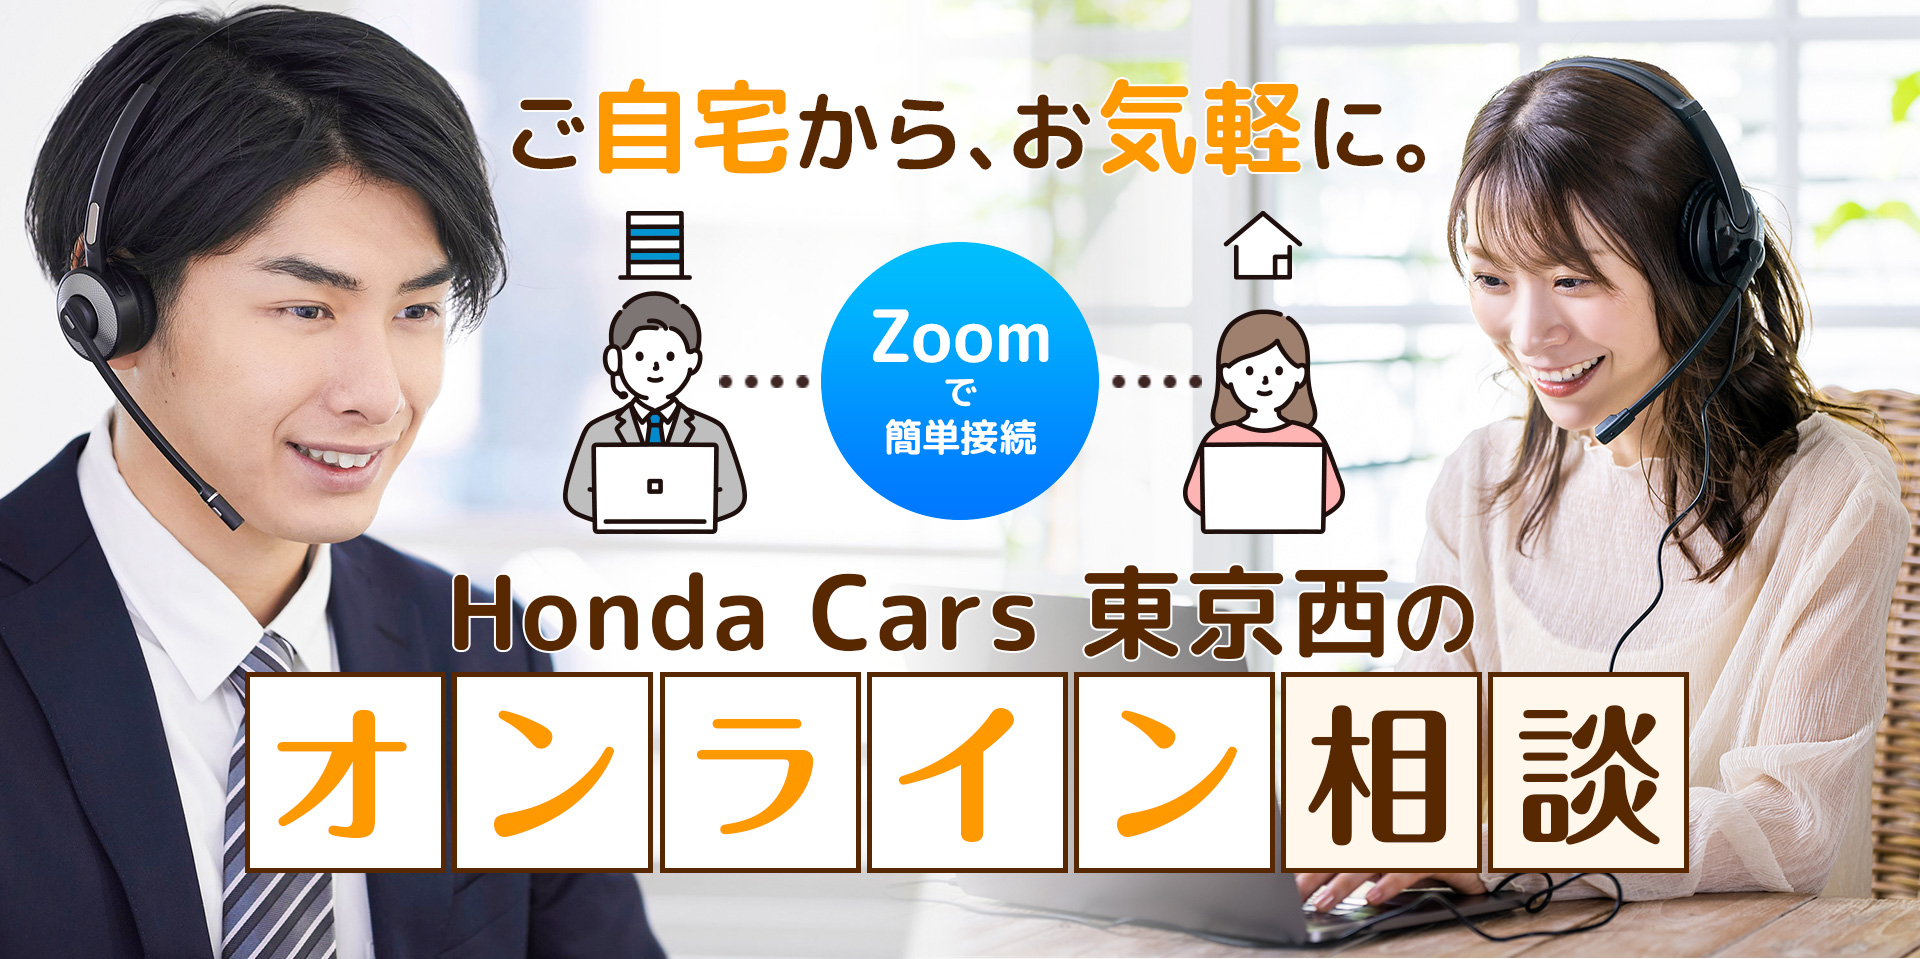 ご自宅からお気軽に。Honda Cars 東京西のオンライン相談